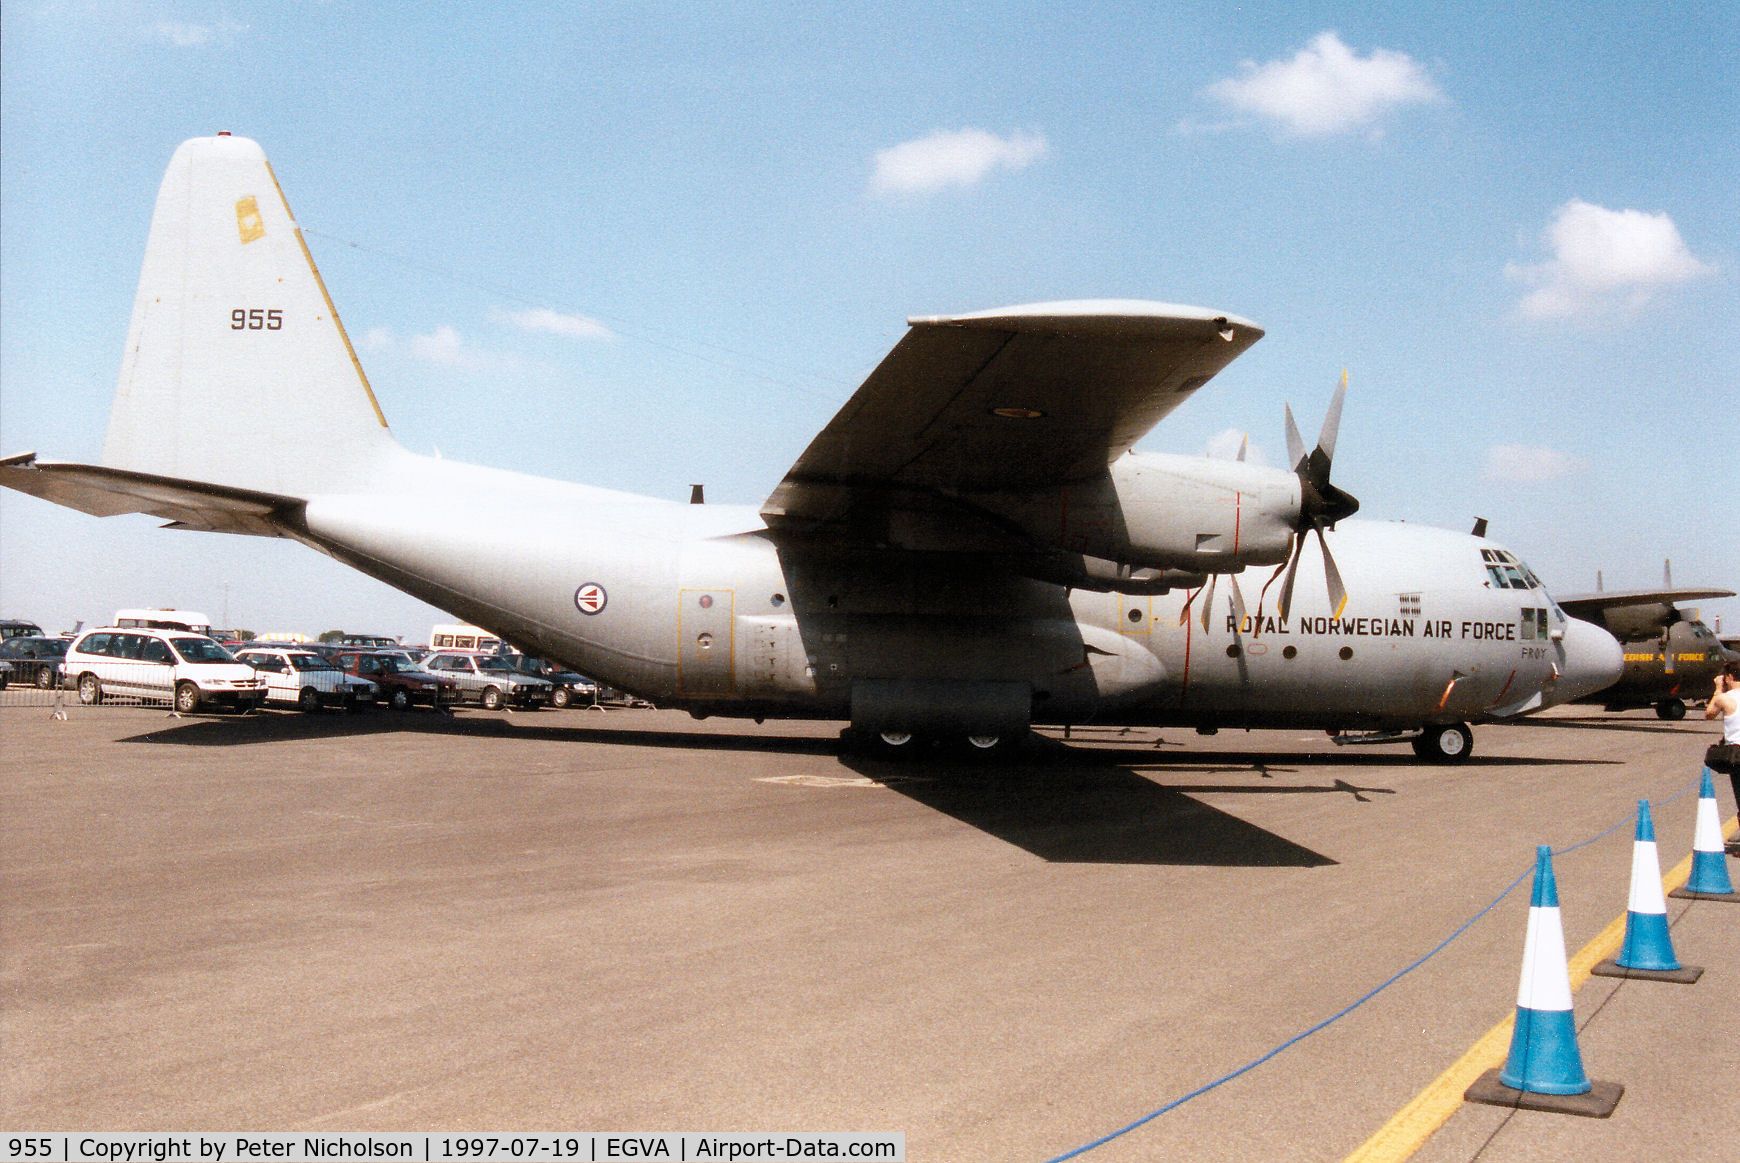 955, 1969 Lockheed C-130H Hercules C/N 382-4337, C-130H Hercules, callsign Norwegian 5041, of 335 Skv Royal Norwegian Air Force on display at the 1997 Intnl Air Tattoo at RAF Fairford.